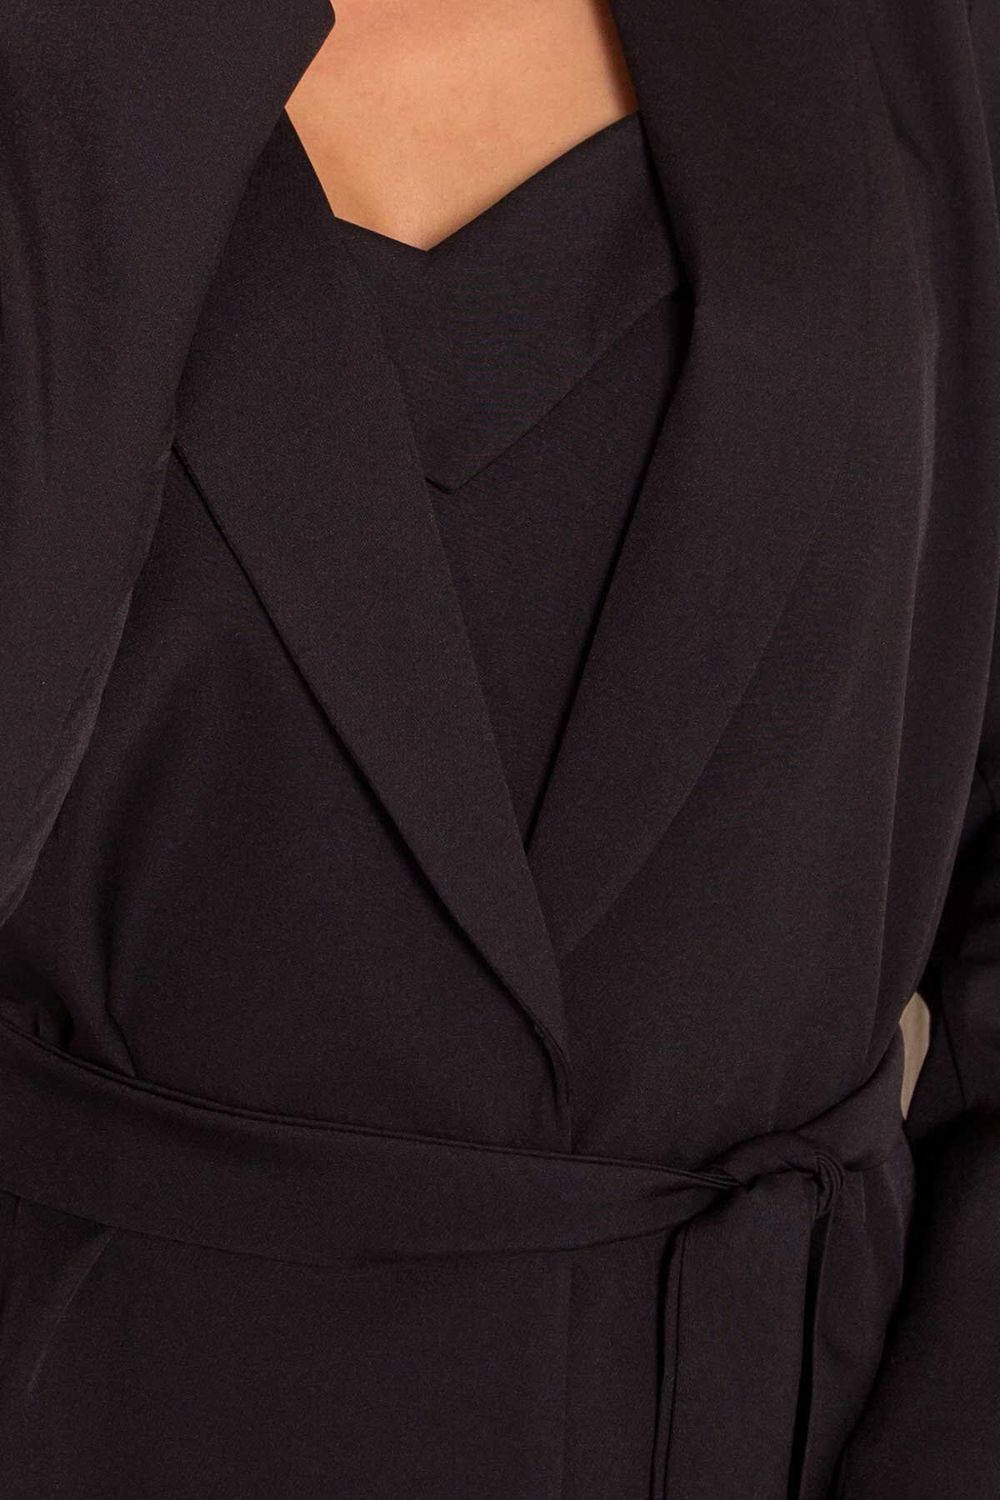 Женский деловой костюм с юбкой черный - фото